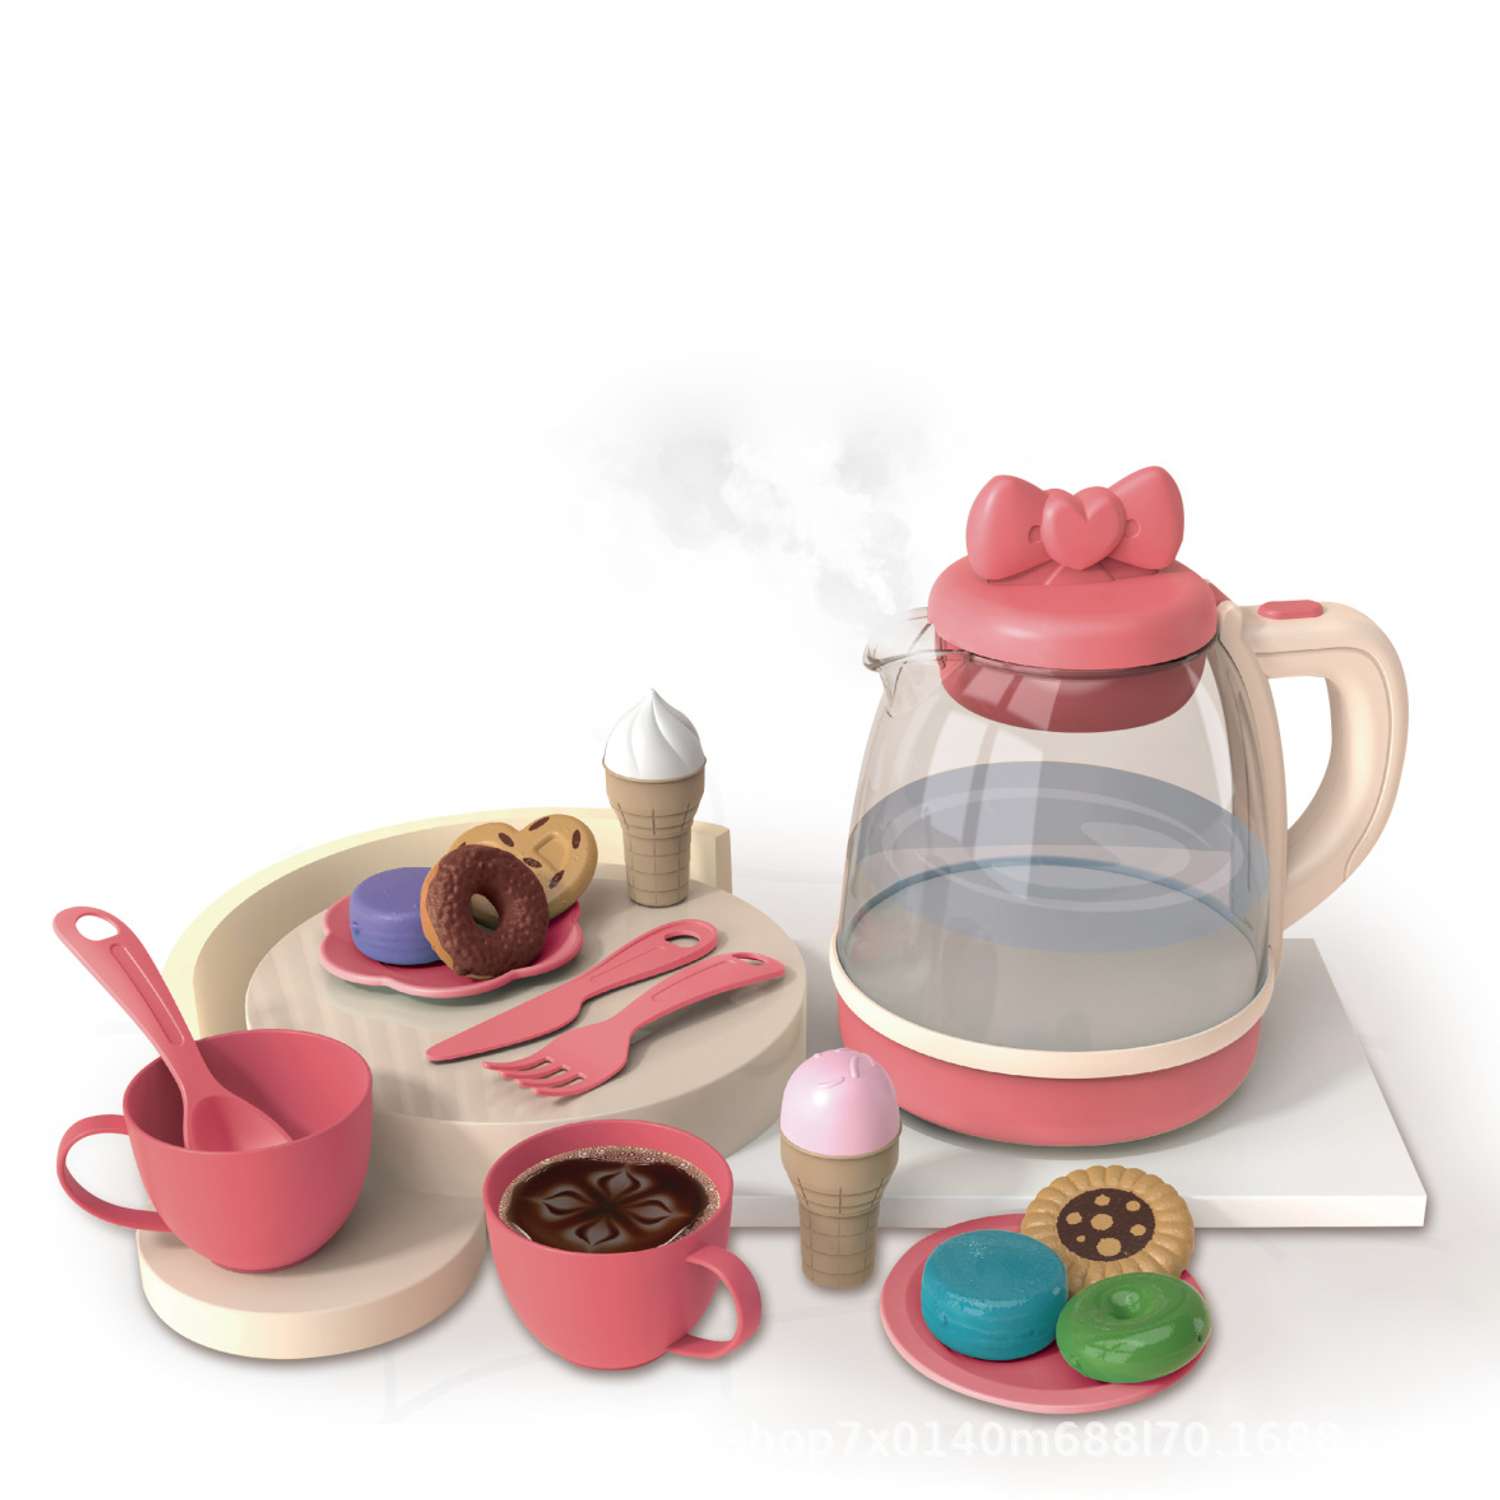 Игровой кухонный набор SHARKTOYS Чайный сервиз со светом и звуком - фото 2